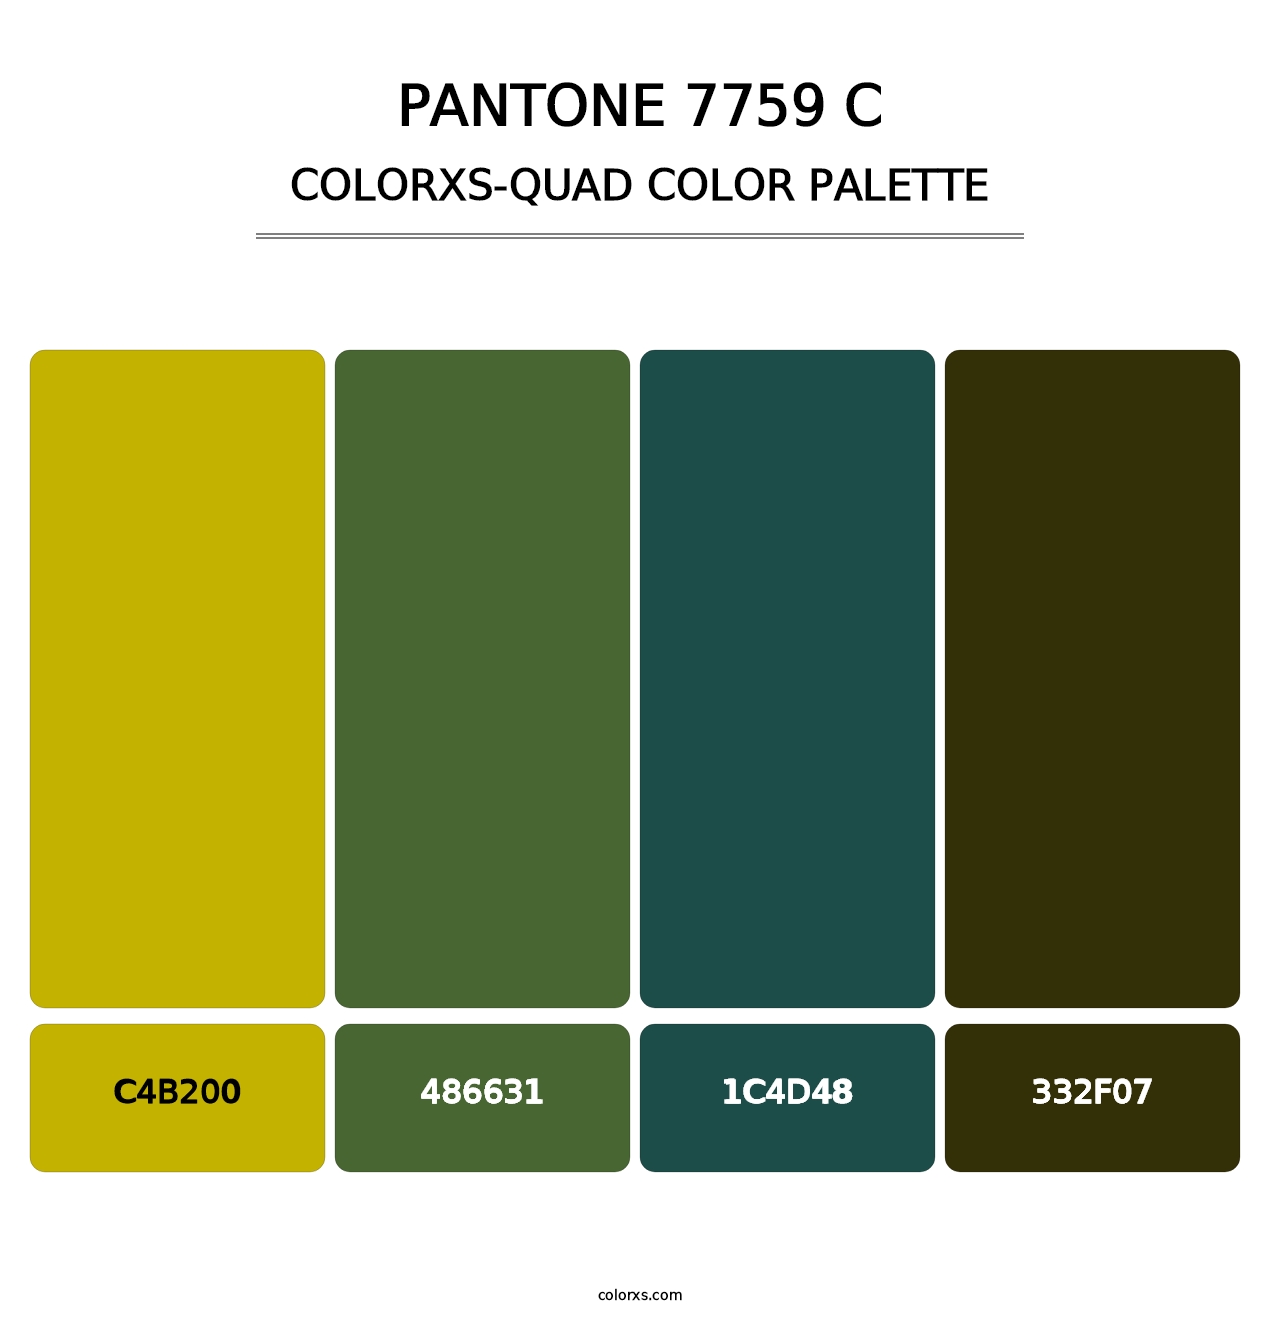 PANTONE 7759 C - Colorxs Quad Palette